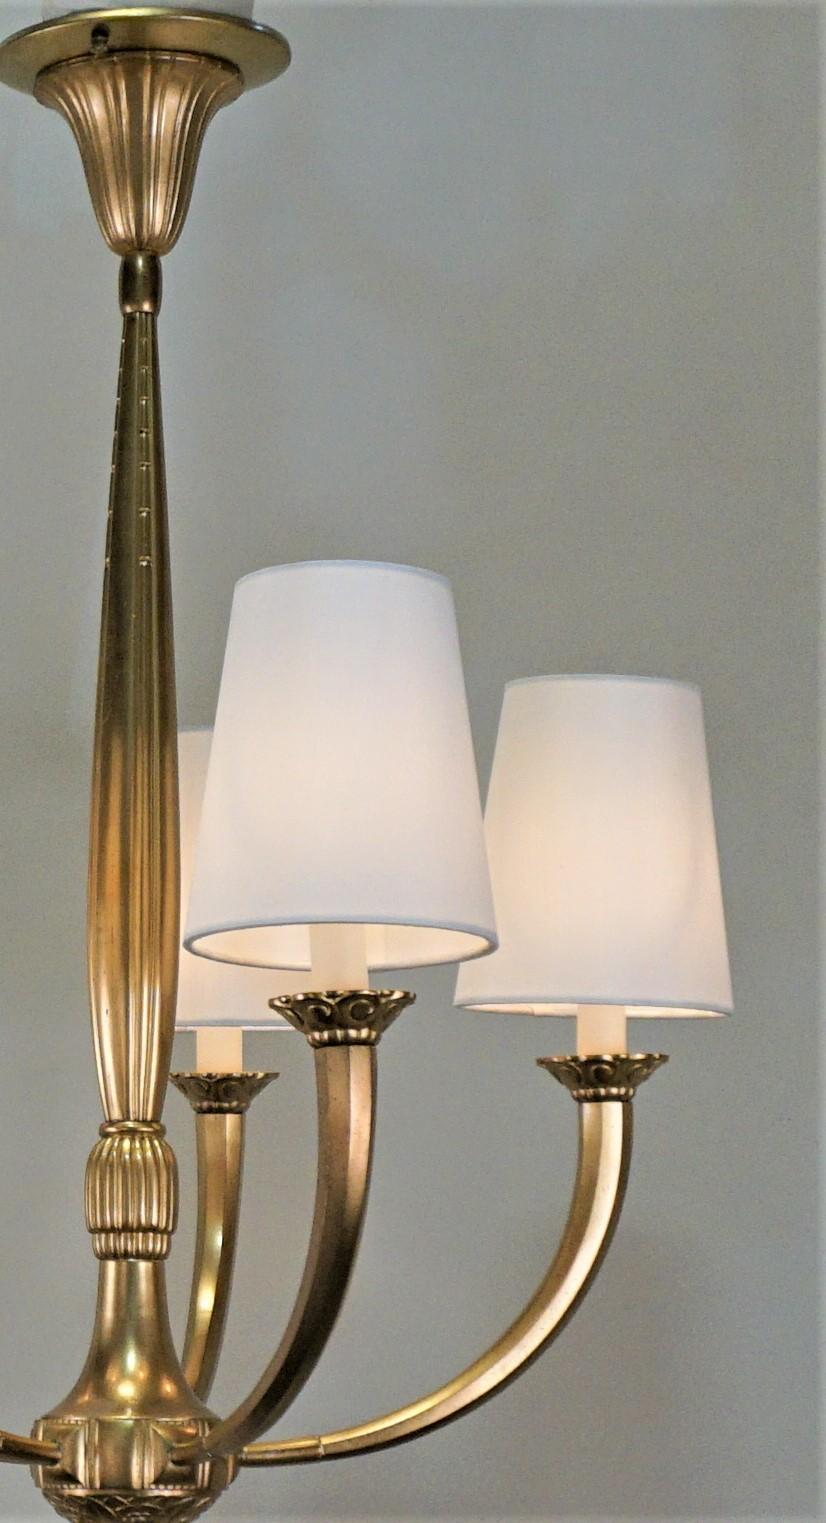 Simple but elegant five light 1930s French bronze Art Deco chandelier
Measurement 18.5